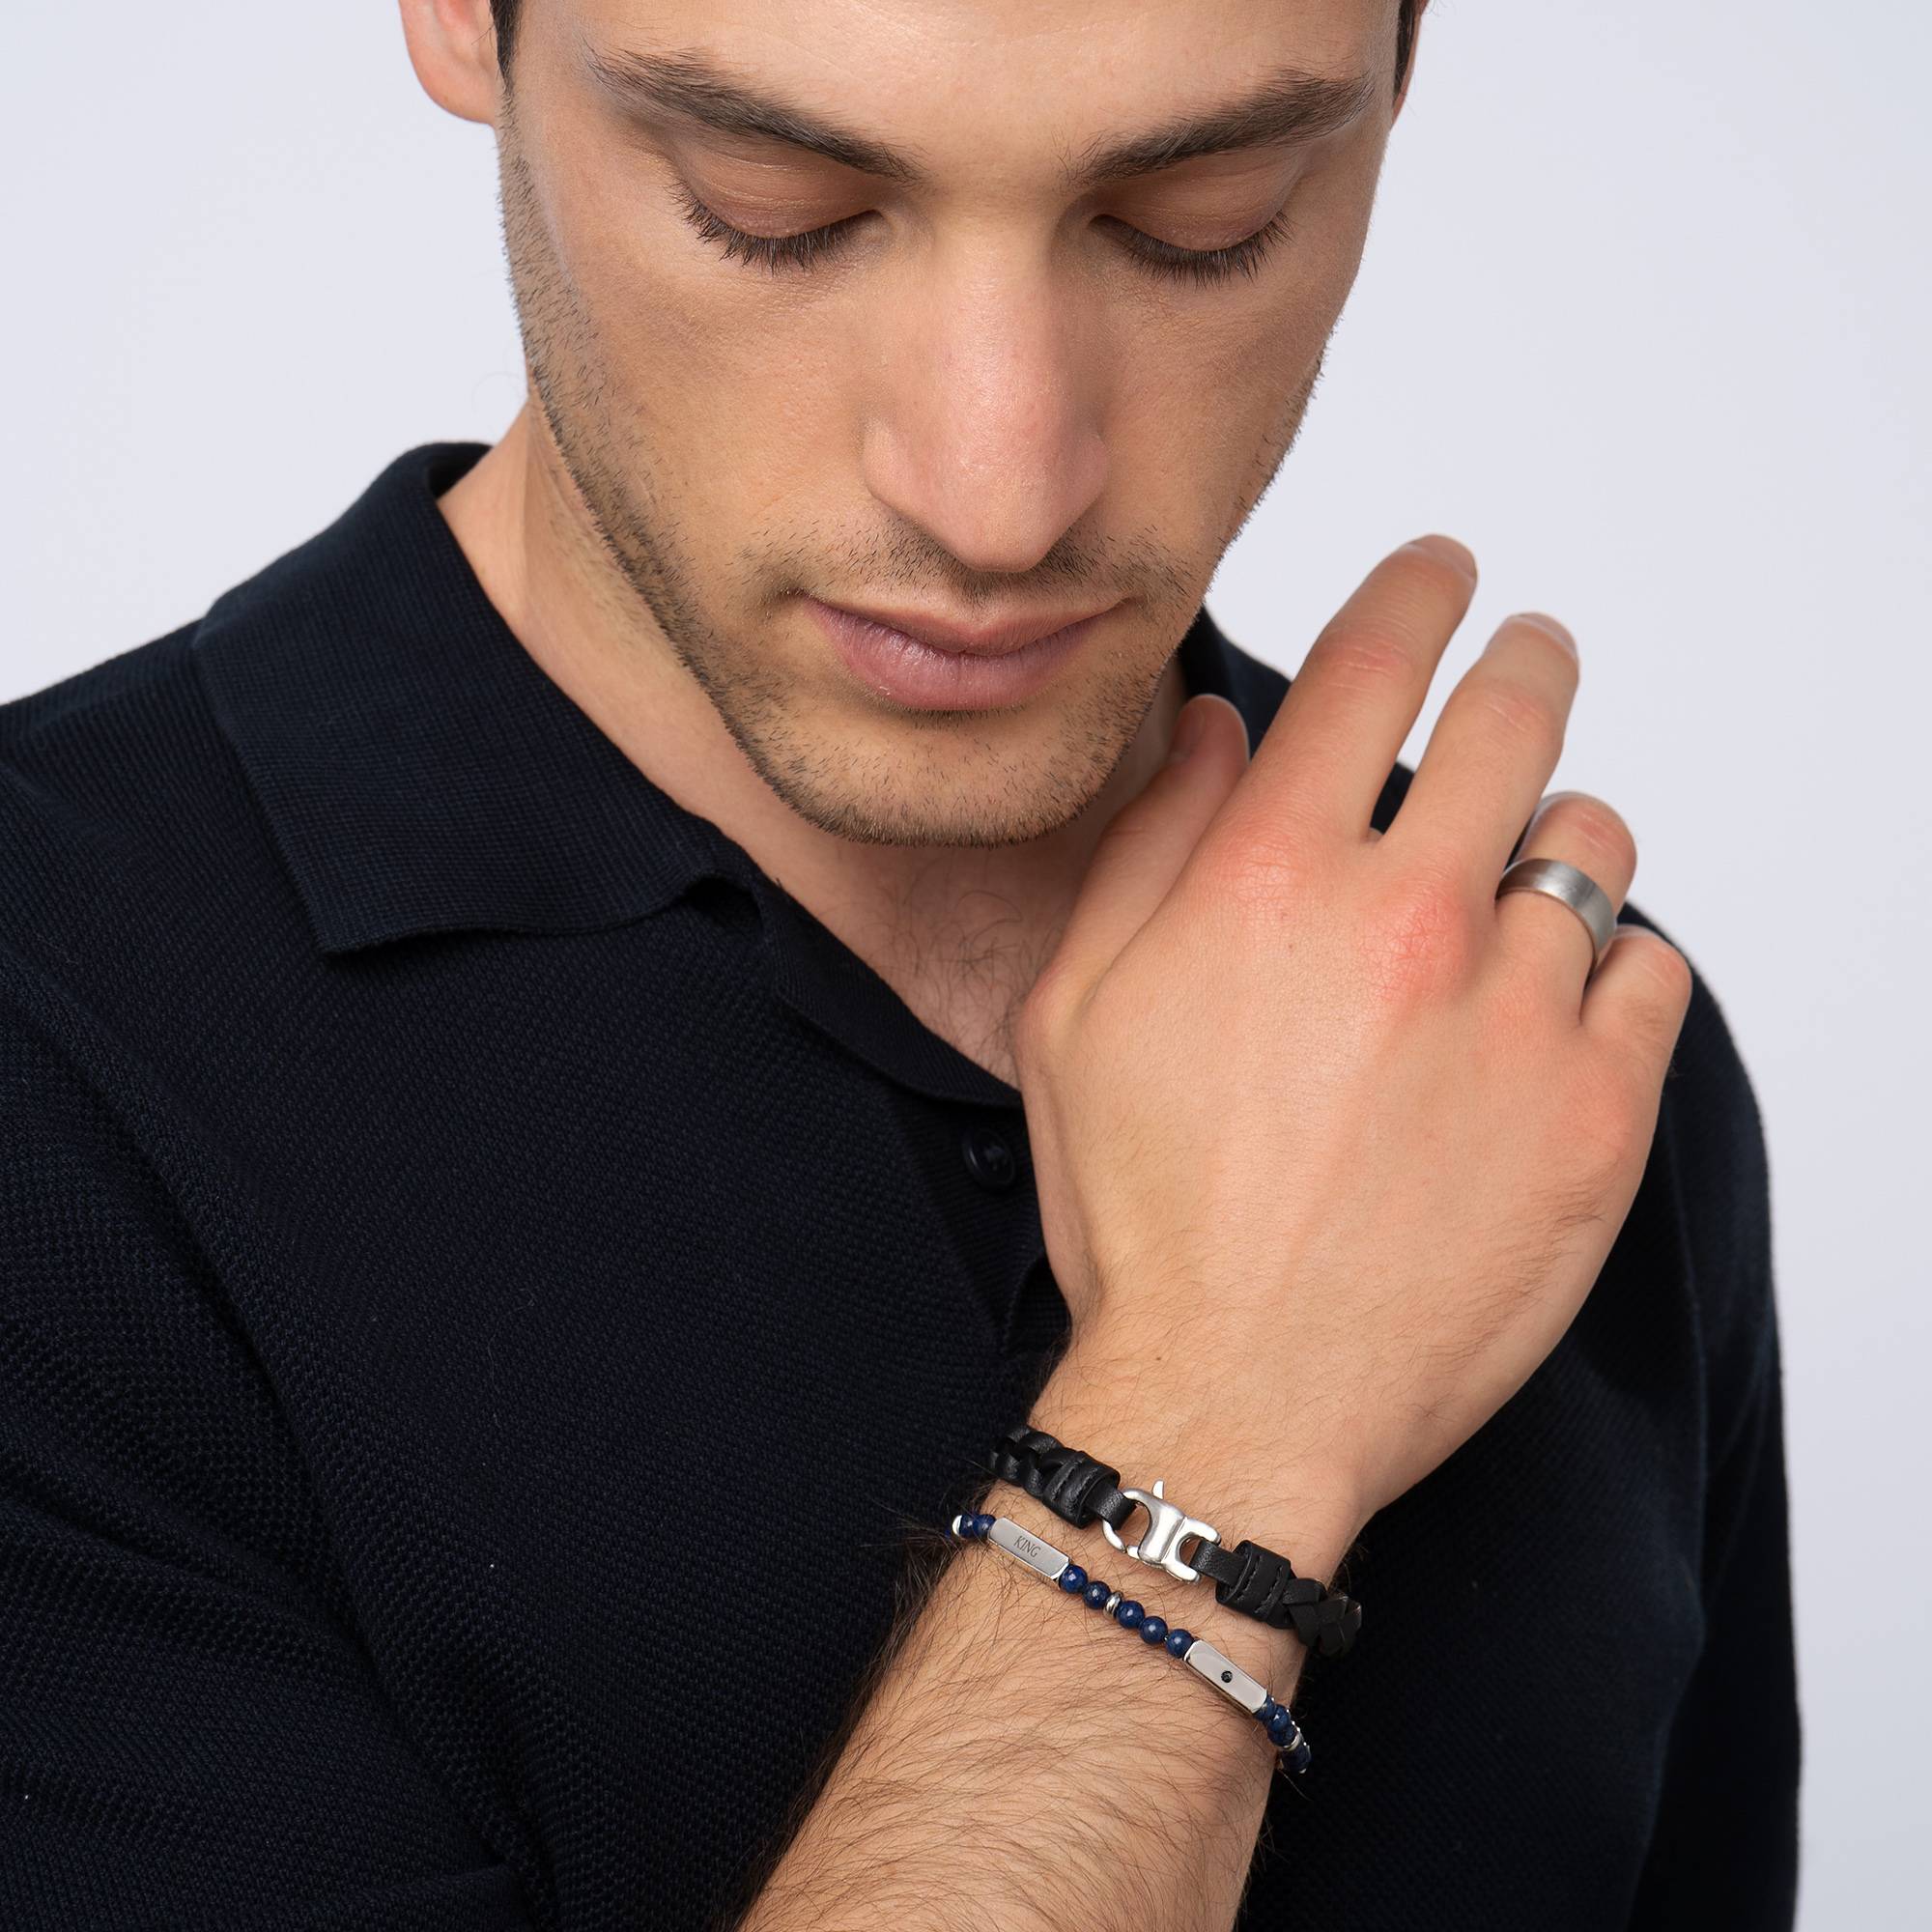 East Coast gepersonaliseerde halfedelstenen kralen armband met zwarte diamanten voor heren-2 Productfoto